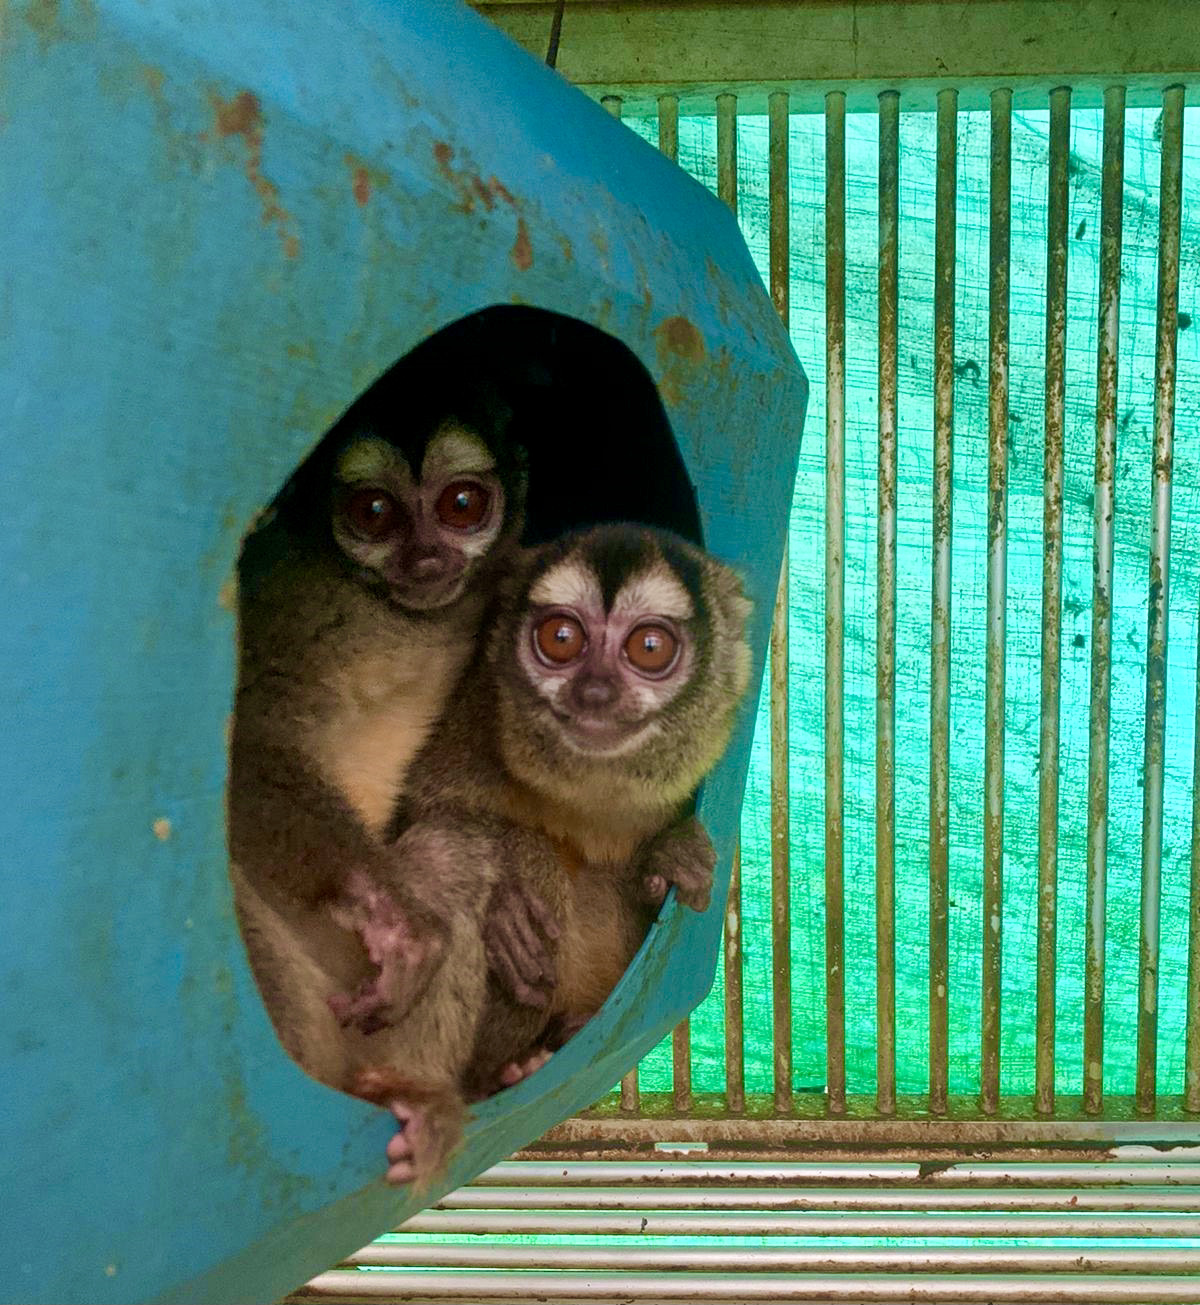 Monkeys in Colombia